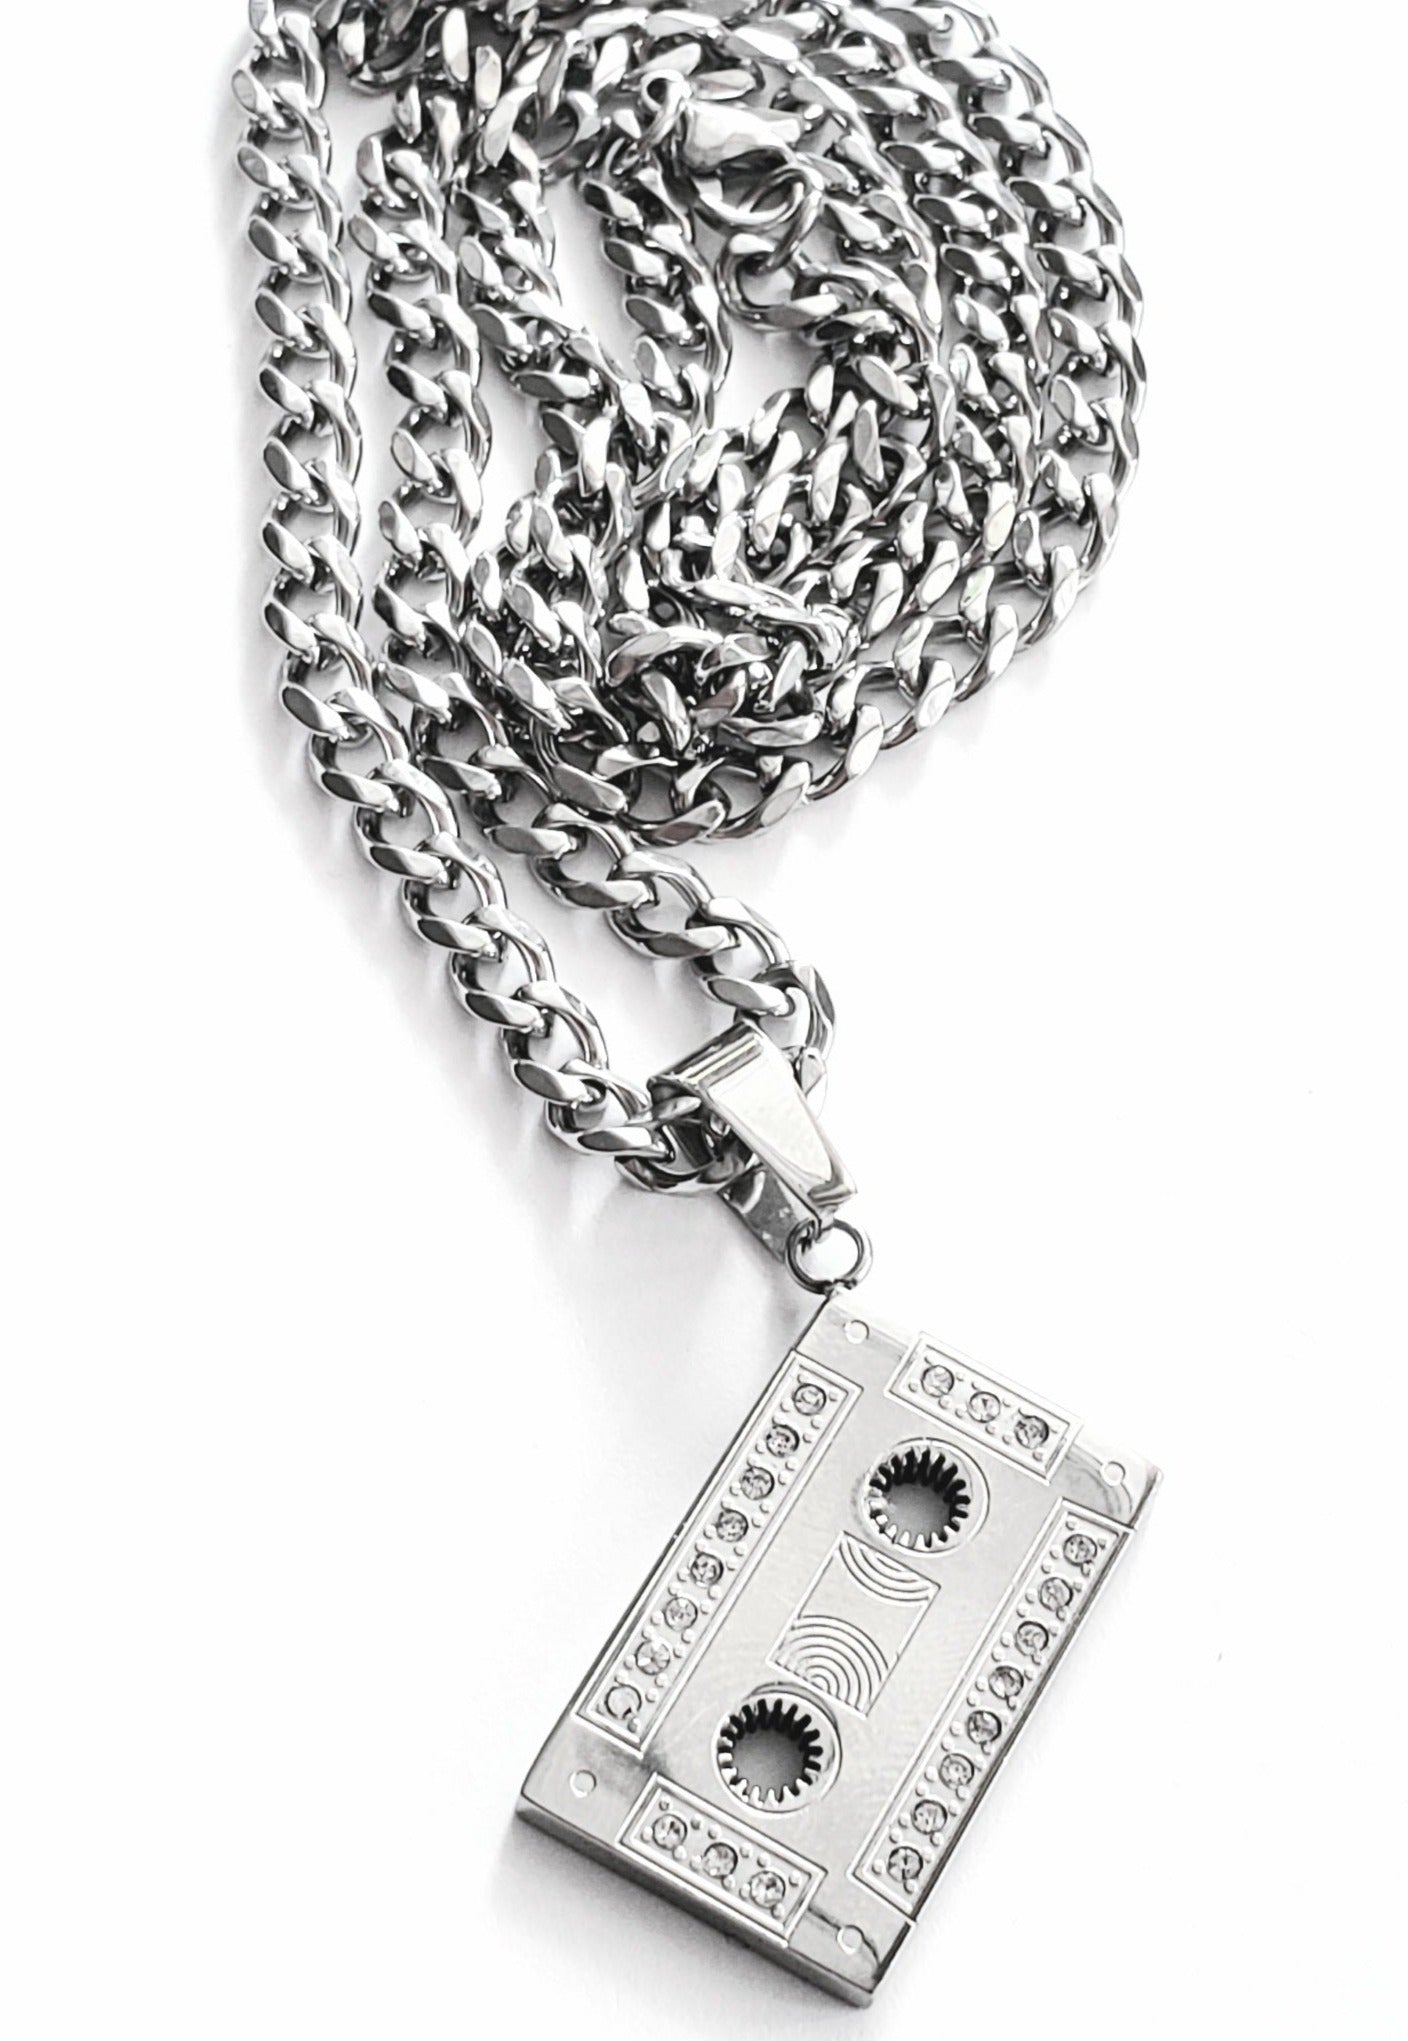 OG mixtape cassette necklace